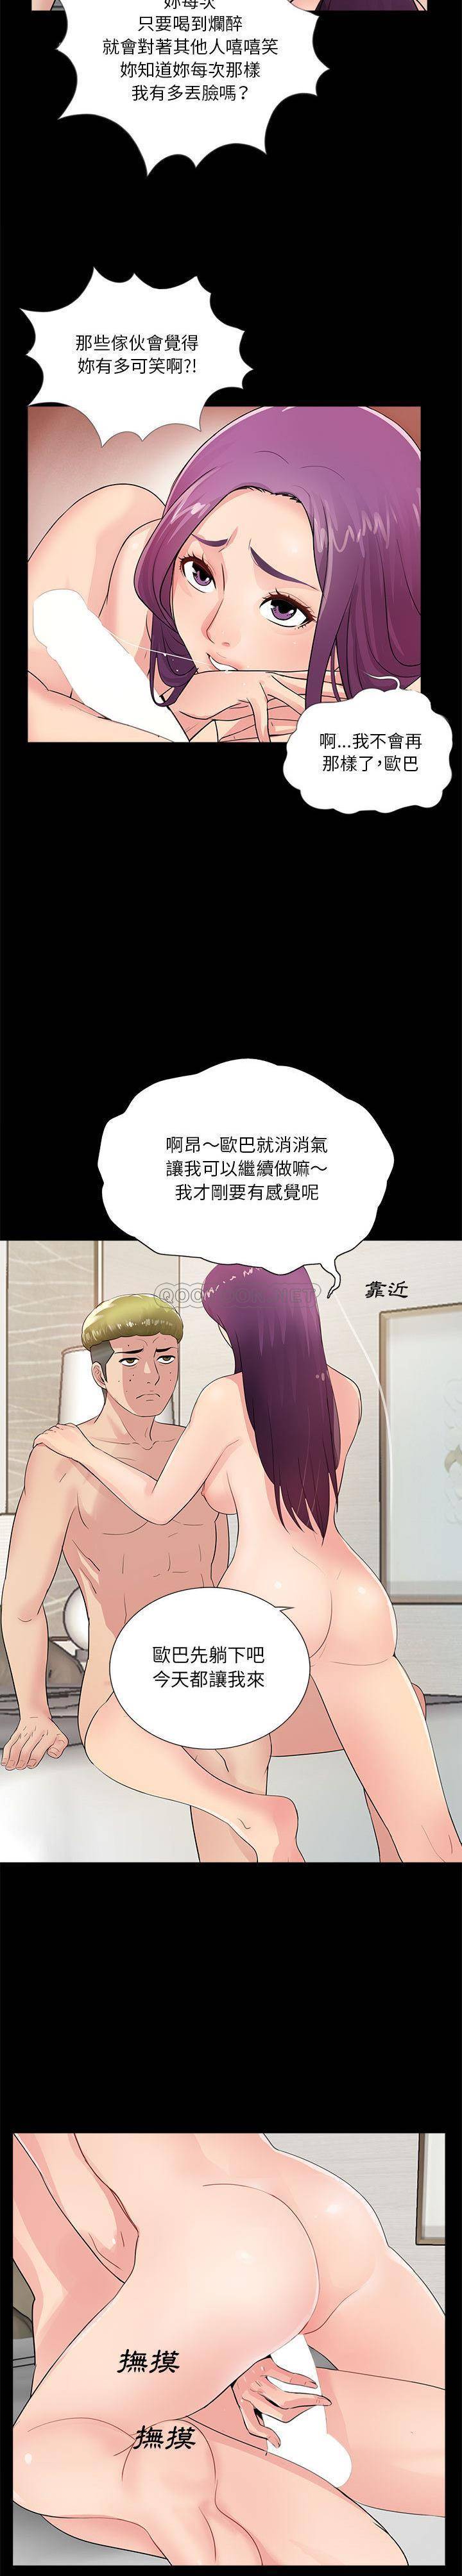 韩国污漫画 神秘復學生 第2话 12